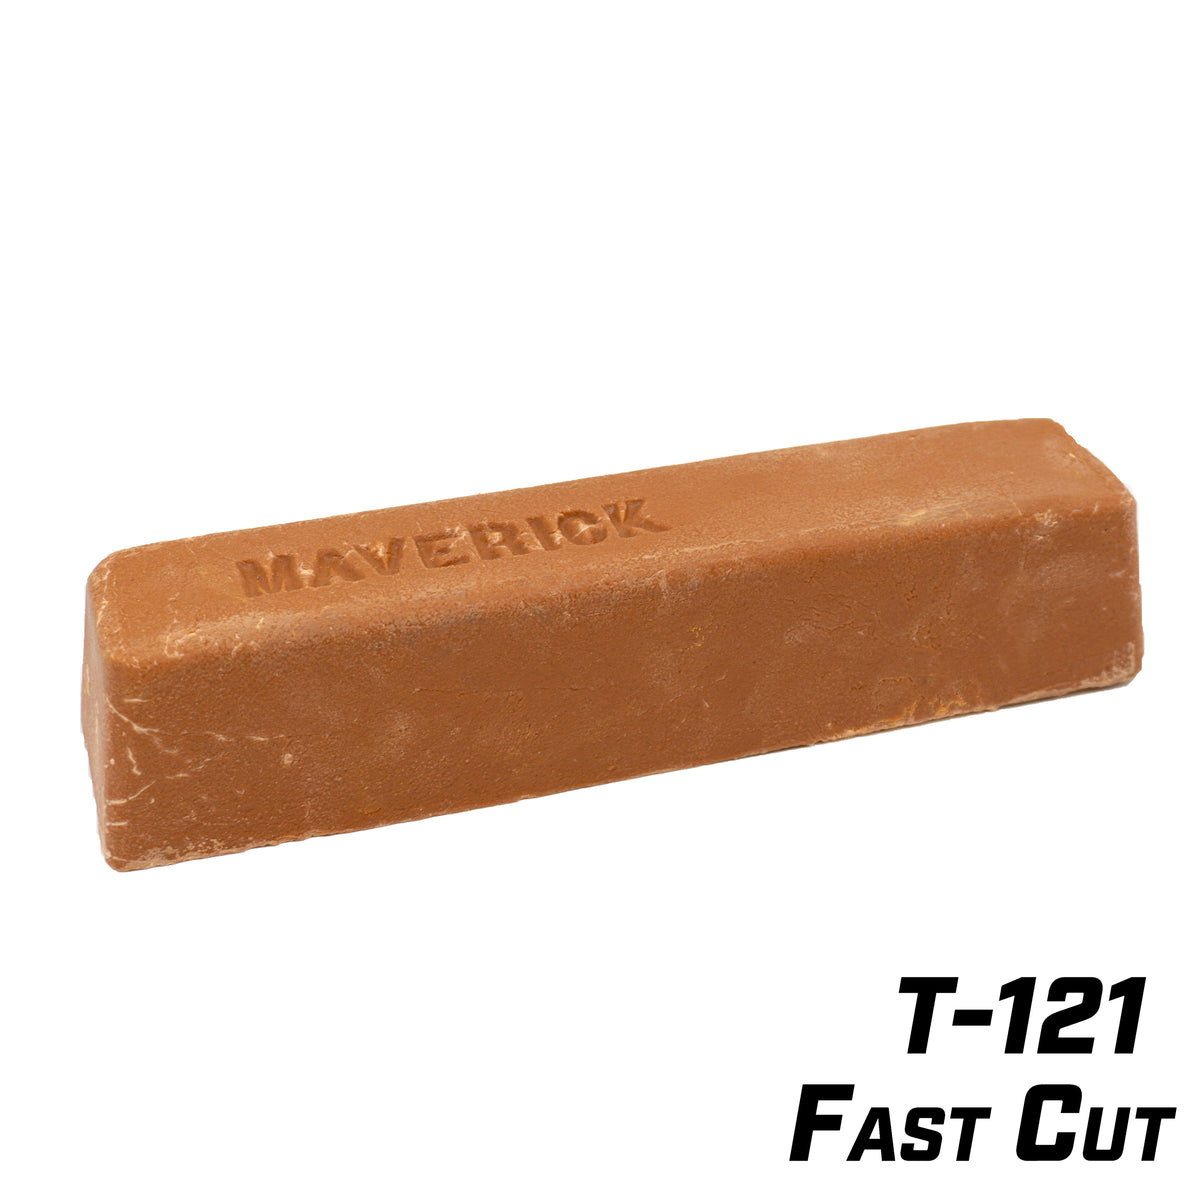 T-Cut Medium duty Scratch remover, Pack of 1